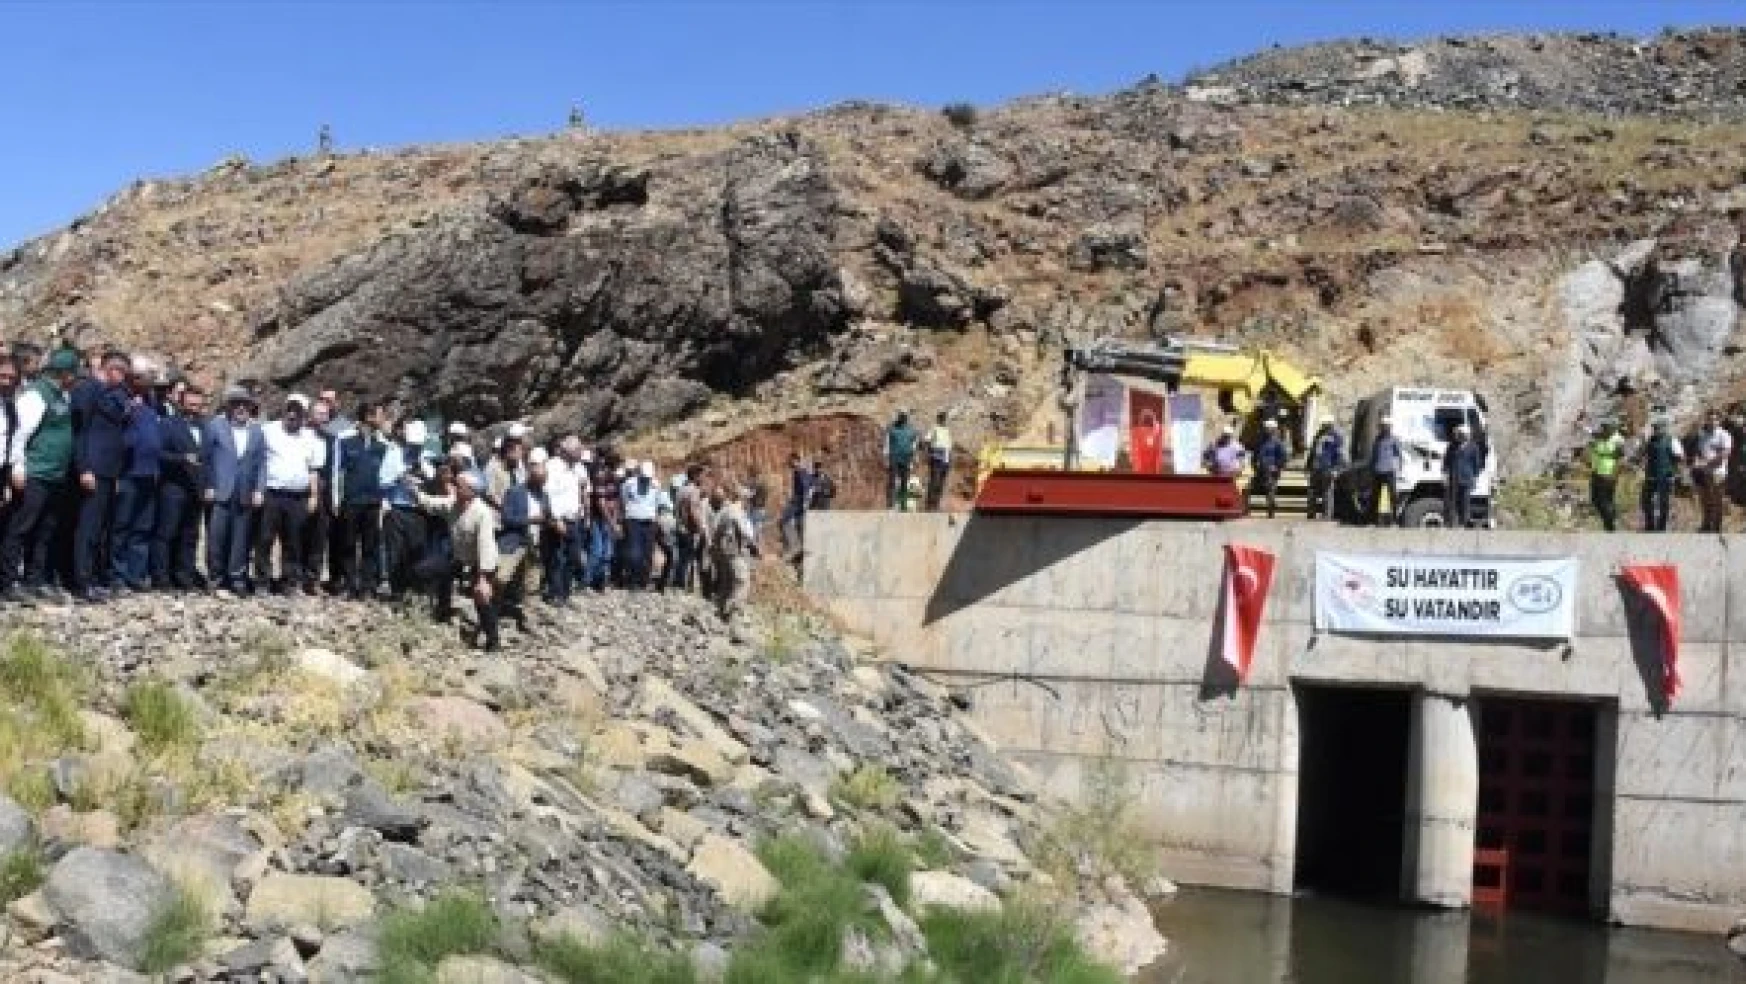 Başköy Barajı'nda Su Tutma Töreni düzenlendi